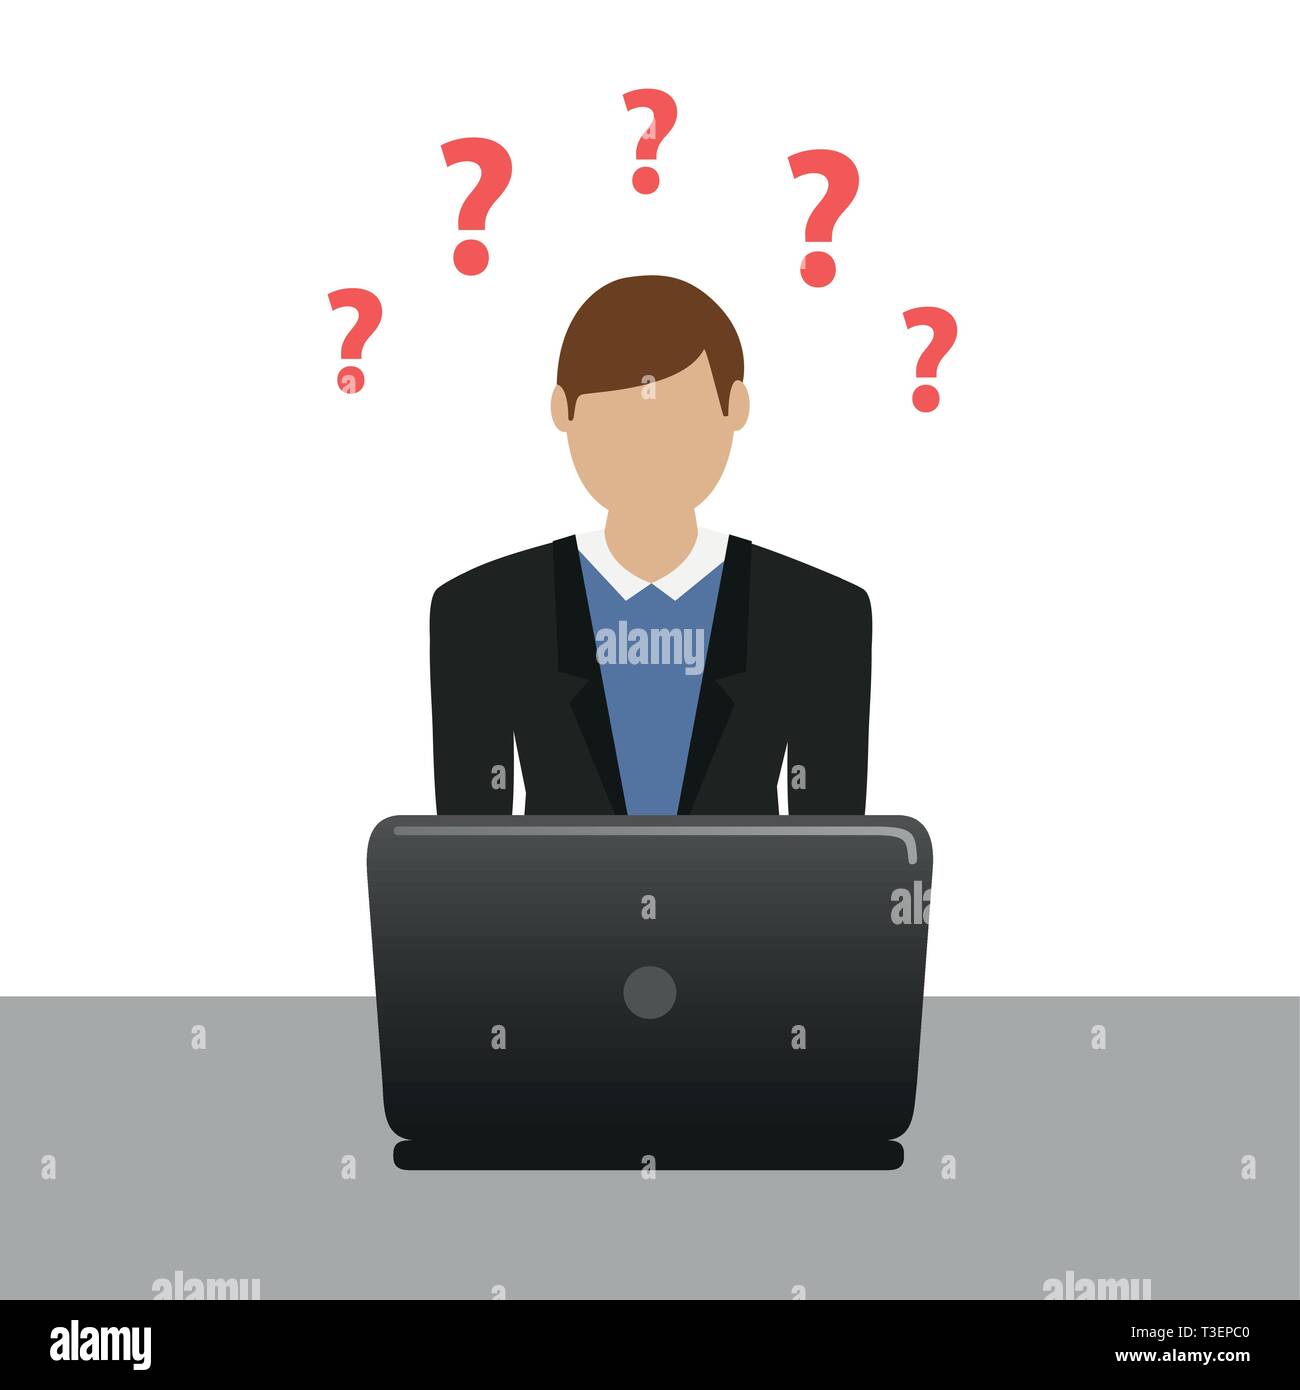 L'homme d'affaires sur l'ordinateur portable a beaucoup de questions illustration vecteur EPS10 Illustration de Vecteur